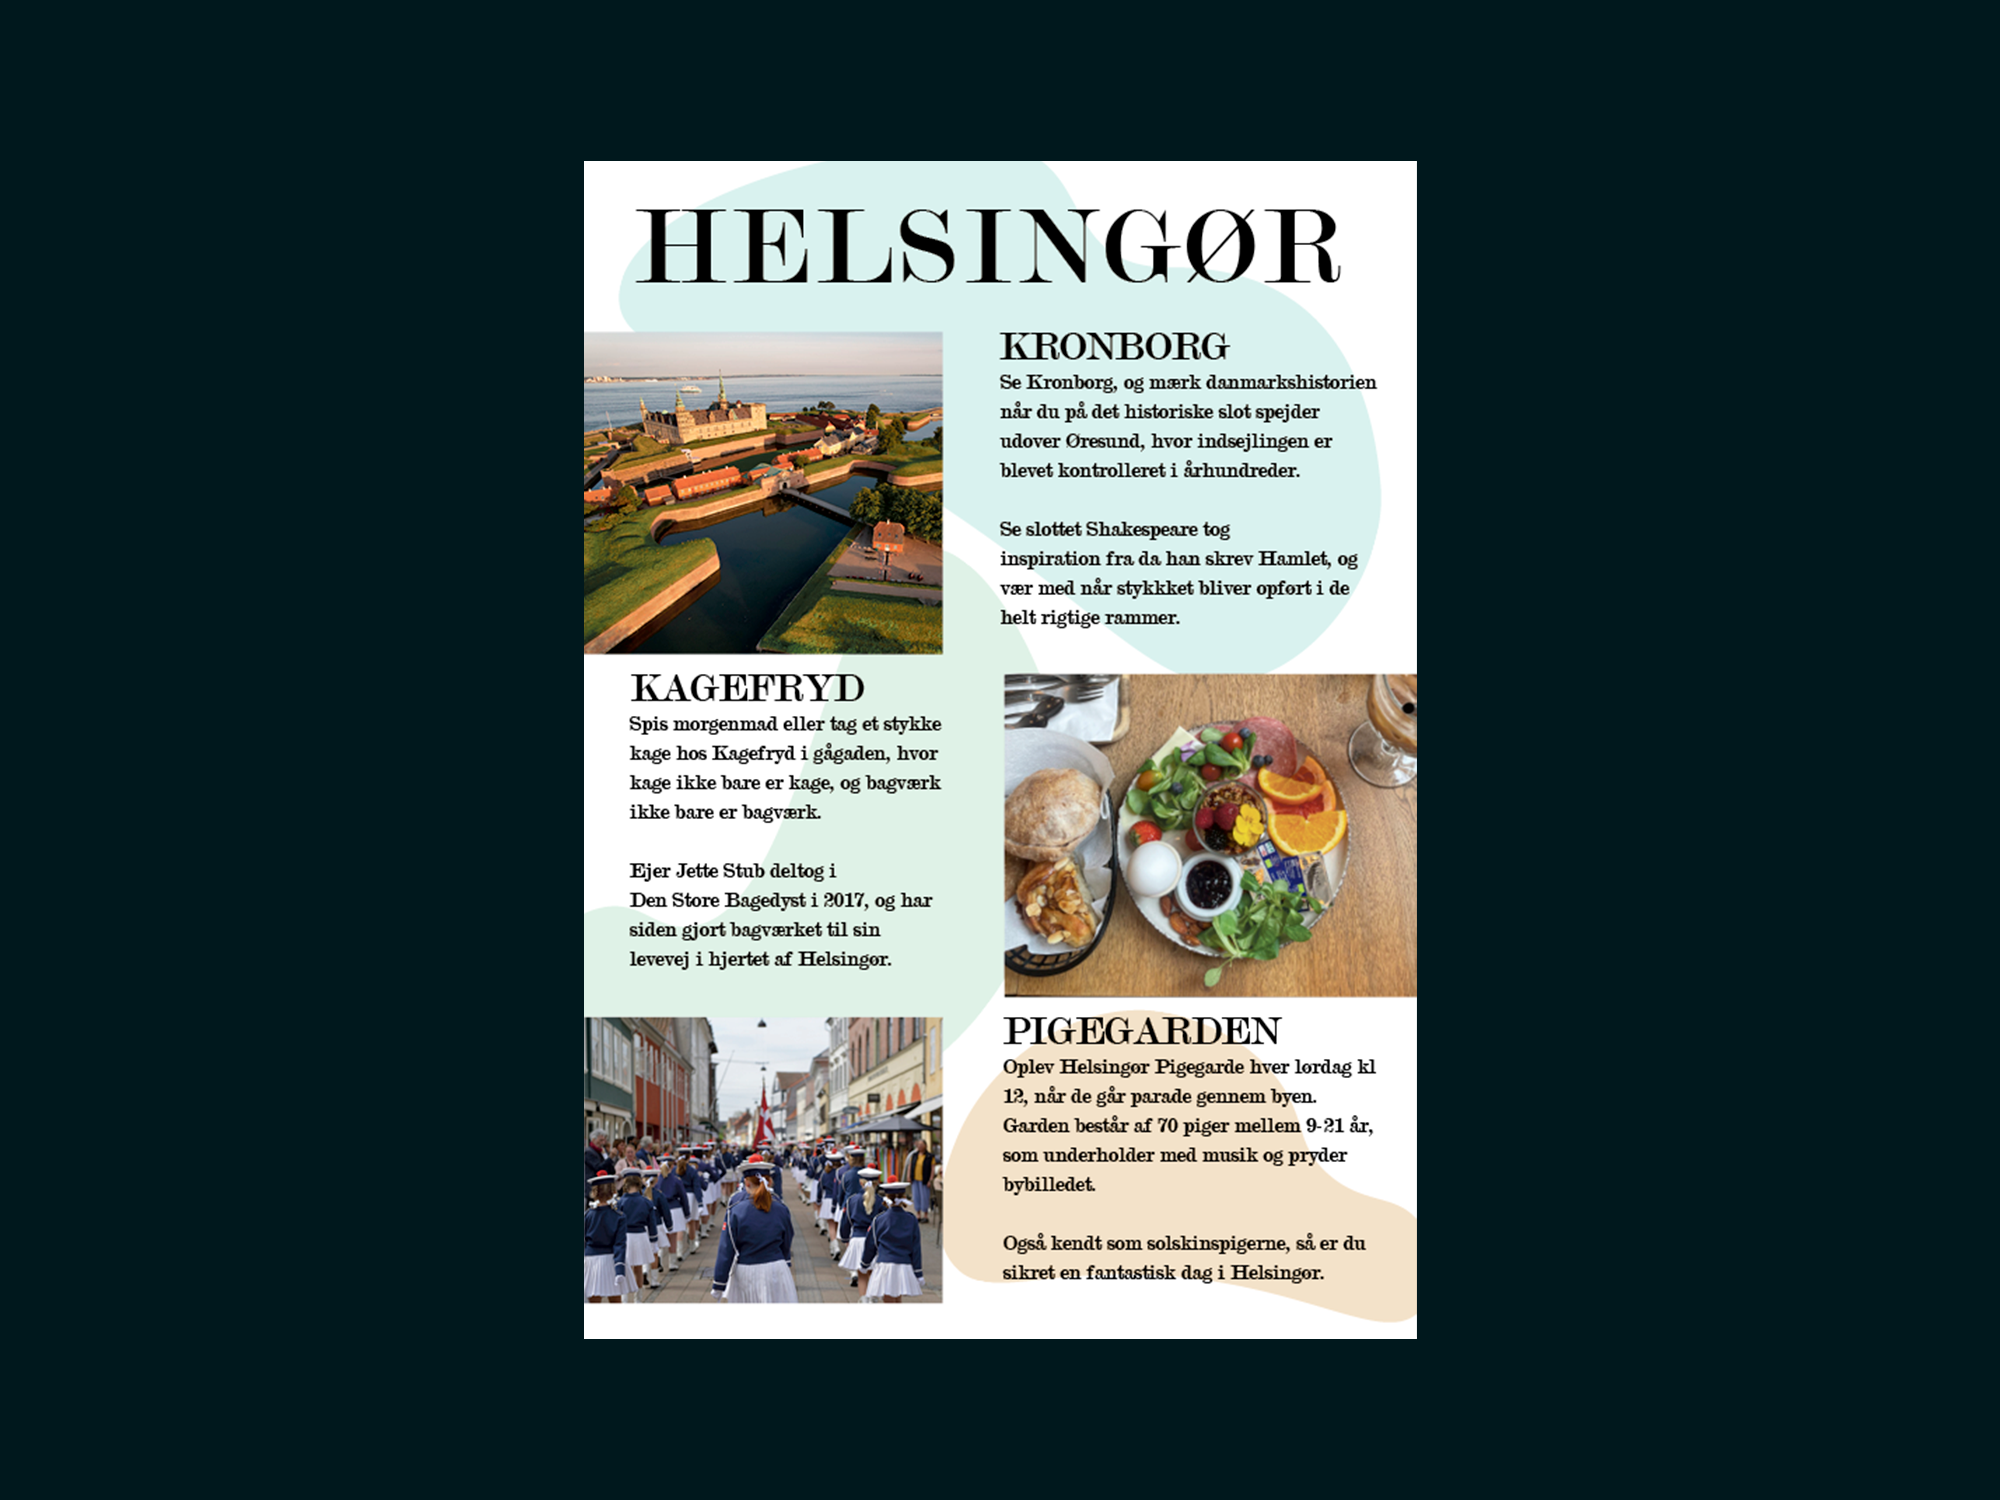 Viser rejsemagasin spread med tre billeder fra Helsingør, af Kronborg, morgenmadstallerken fra Kagefryd, og Helsingør Pigegarde